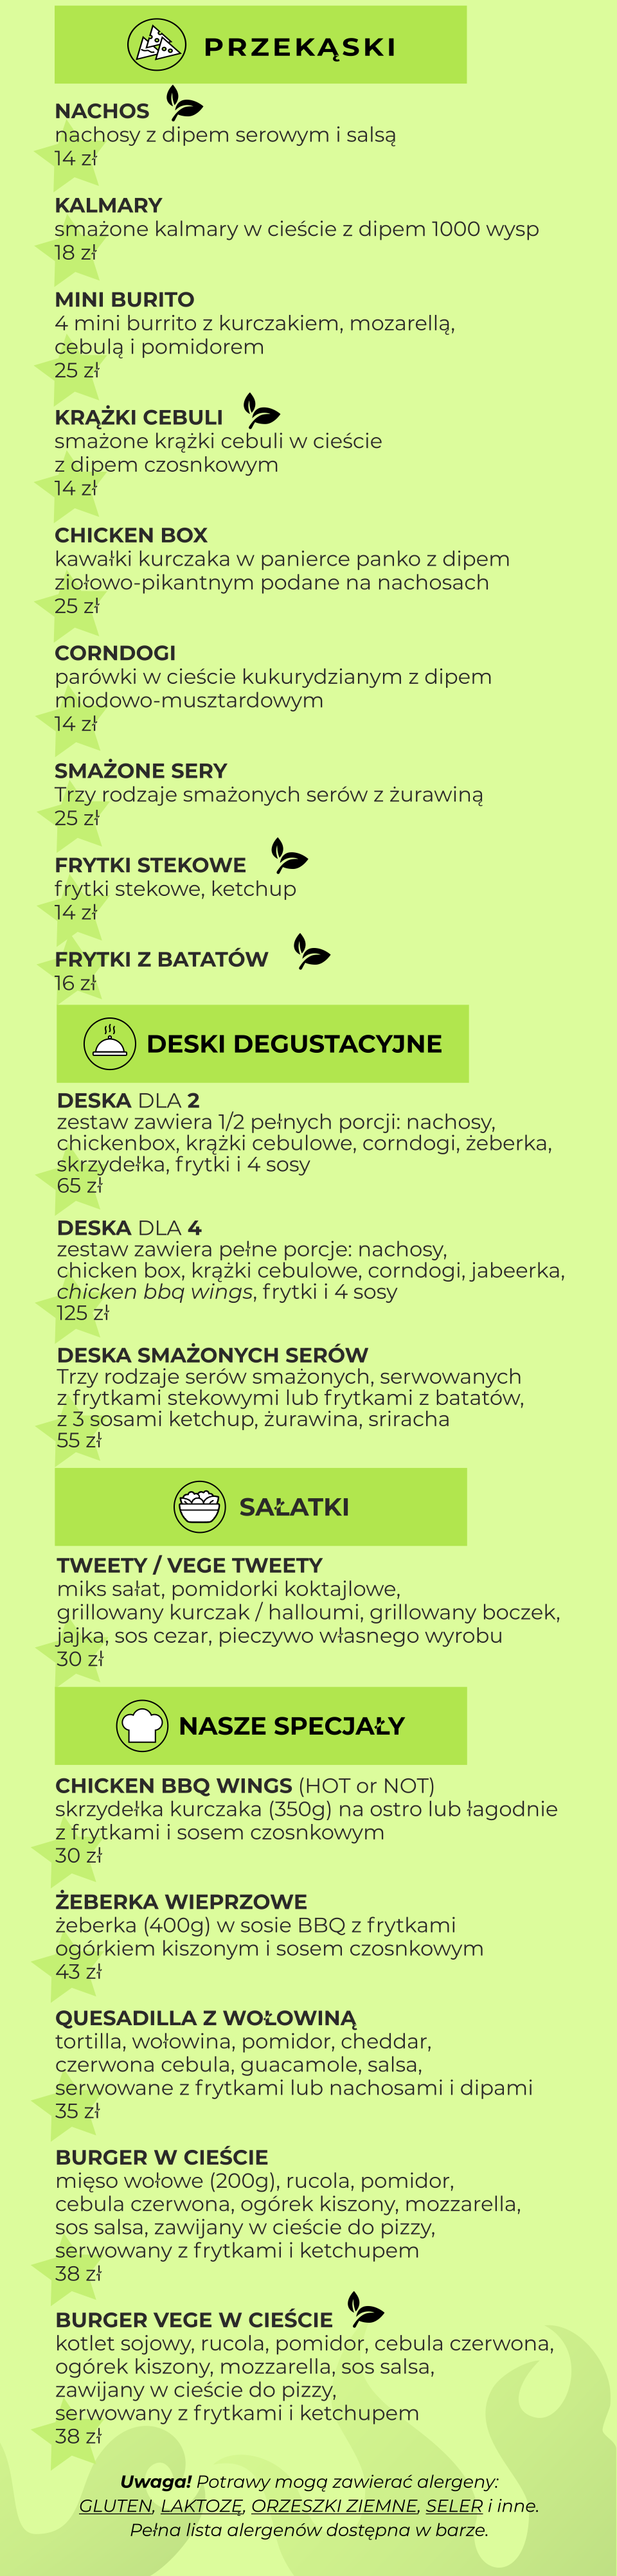 poznan menu mobile02PL